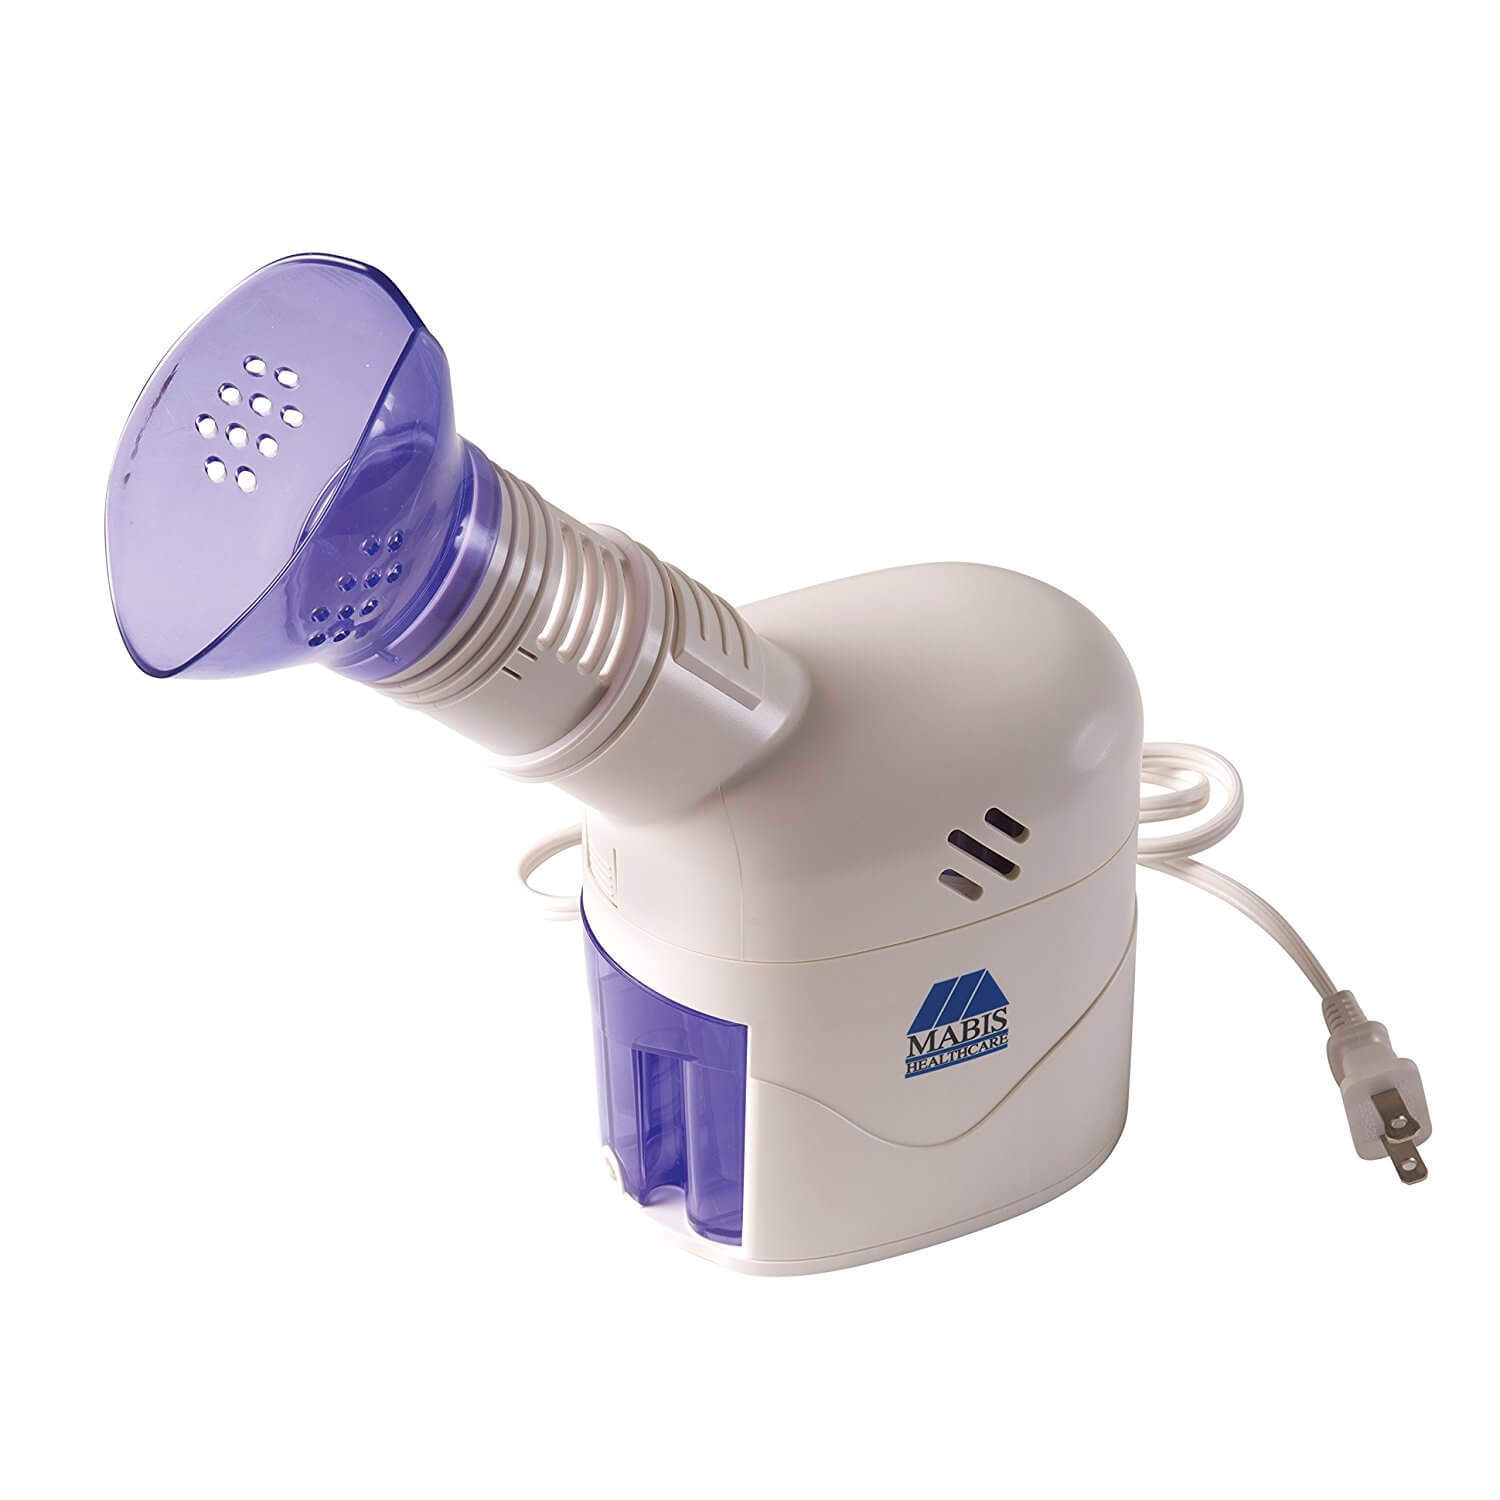 Mabis Personal Steam Inhaler, Steam Vaporizer